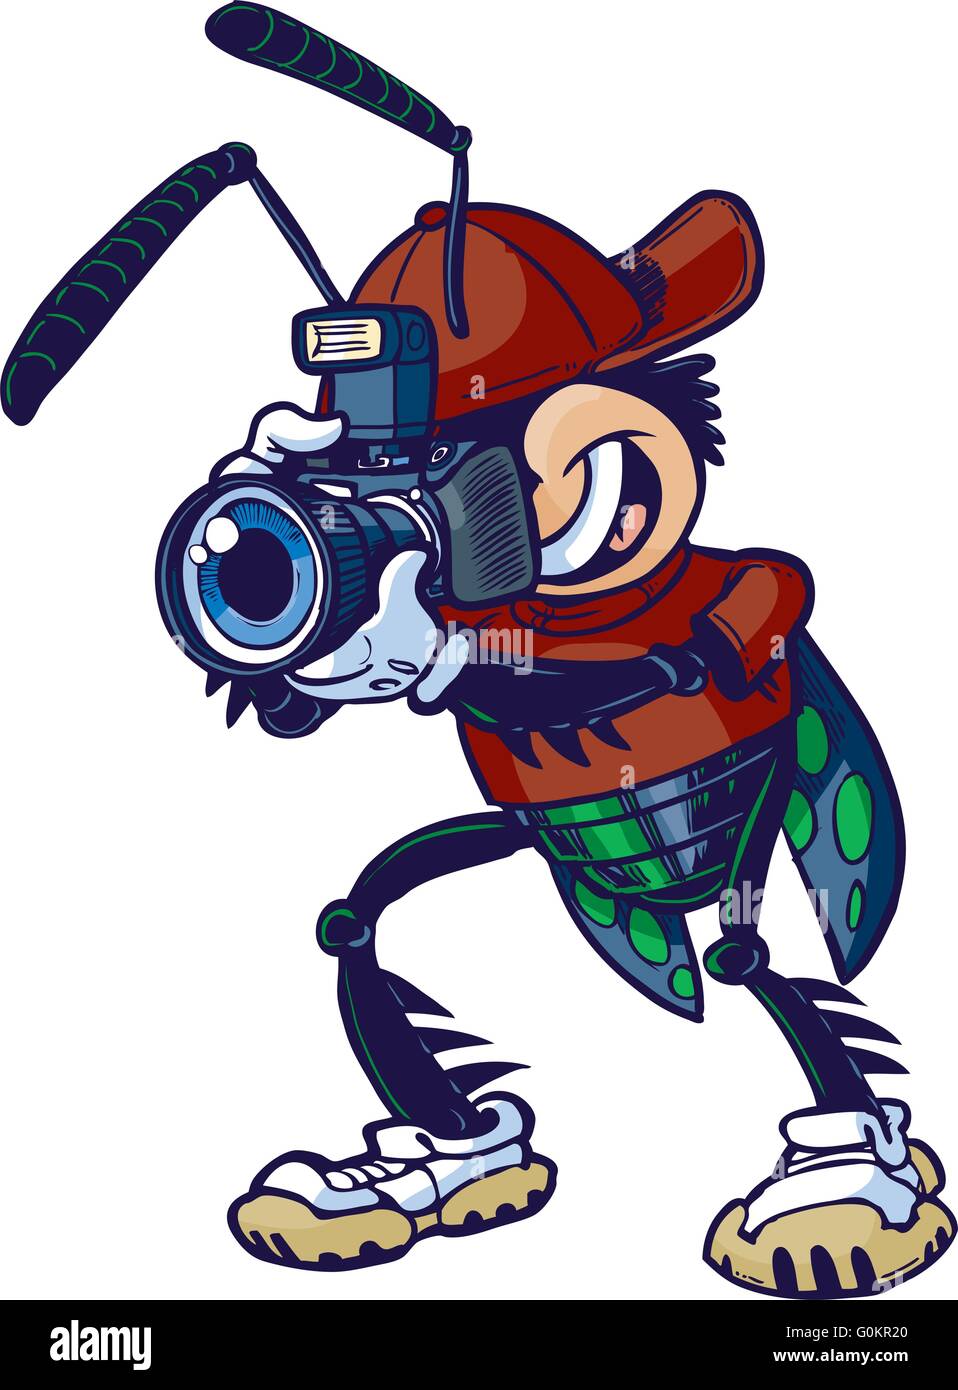 Vettore di Cartoon clip art illustrazione di un otturatore Bug o insetto carattere mascotte in possesso di una fotocamera. Illustrazione Vettoriale